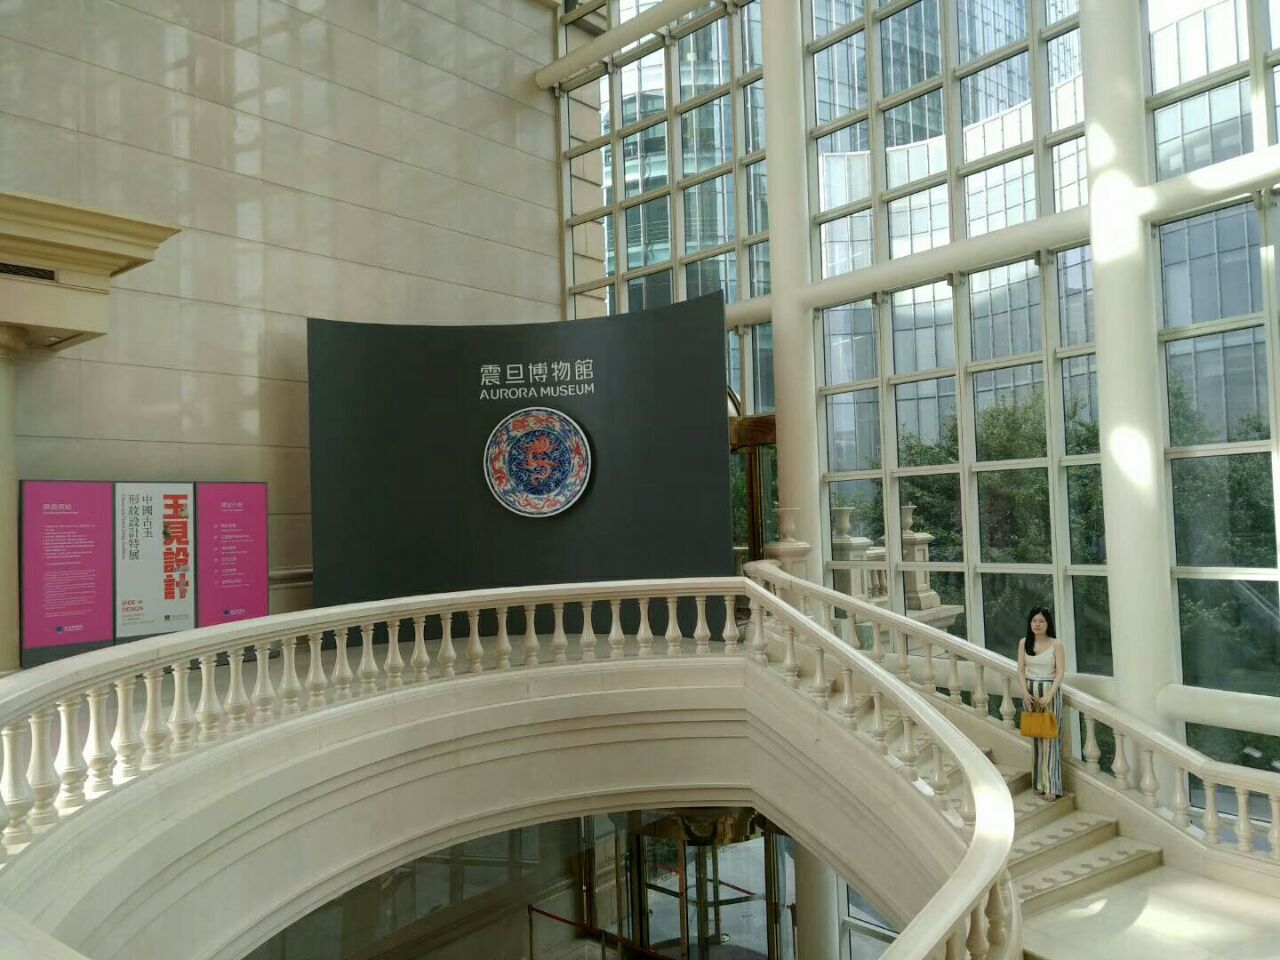 上海震旦博物馆 - 上海旅游景点详情 -上海市文旅推广网-上海市文化和旅游局 提供专业文化和旅游及会展信息资讯